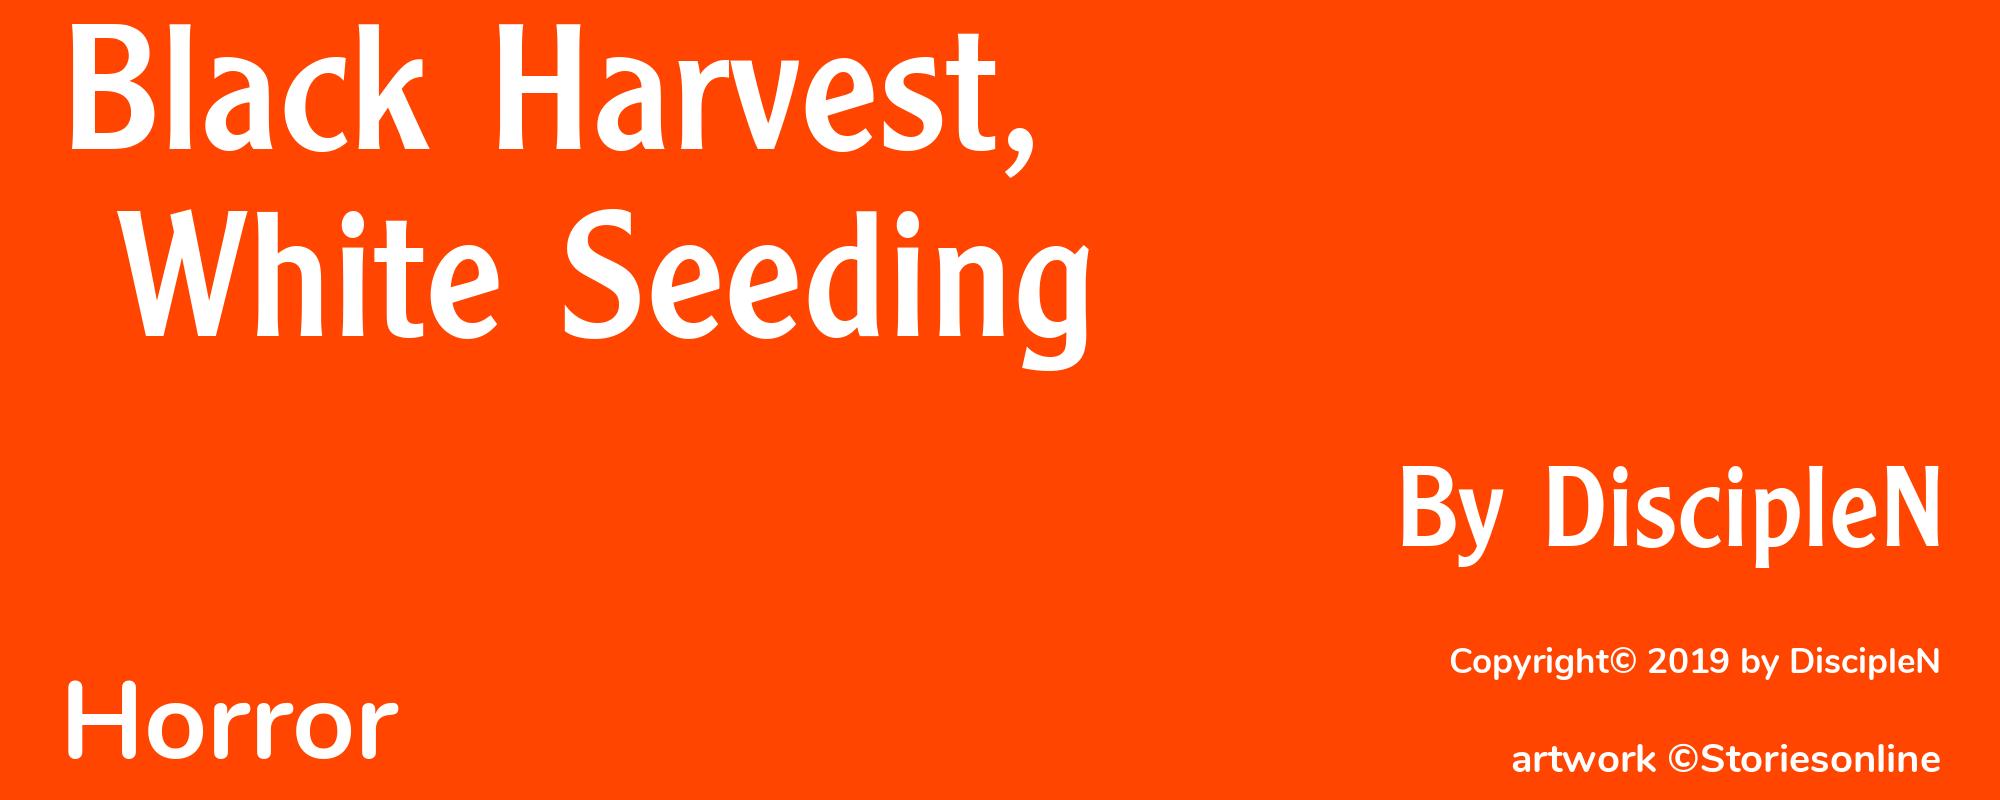 Black Harvest, White Seeding - Cover